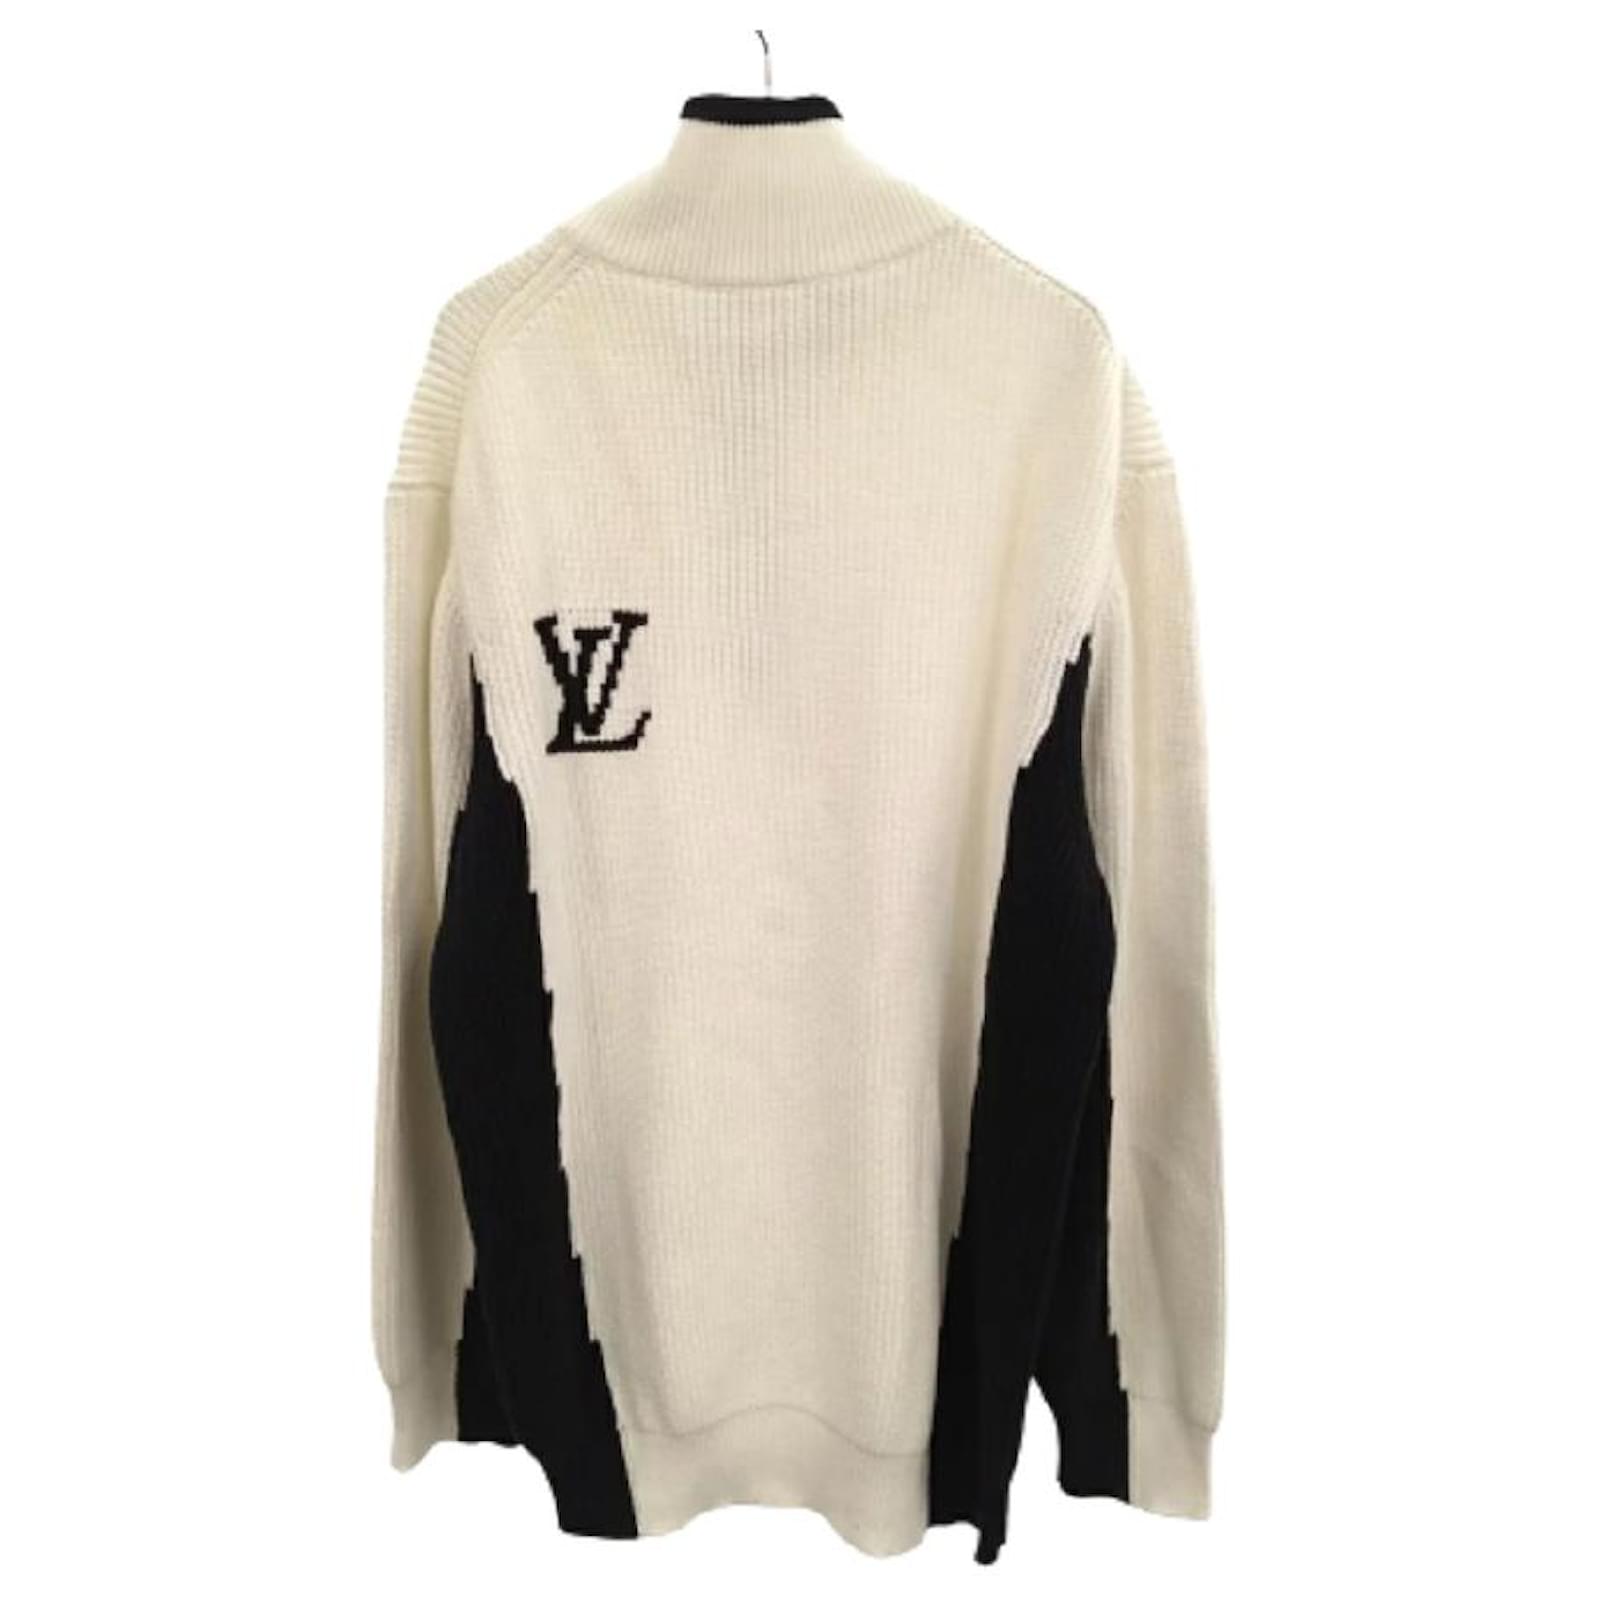 Louis Vuitton 22SS NIGO Intarsia Heart Logo Turtleneck Knit Sweater RM221M  ZLL HMN05W White L White